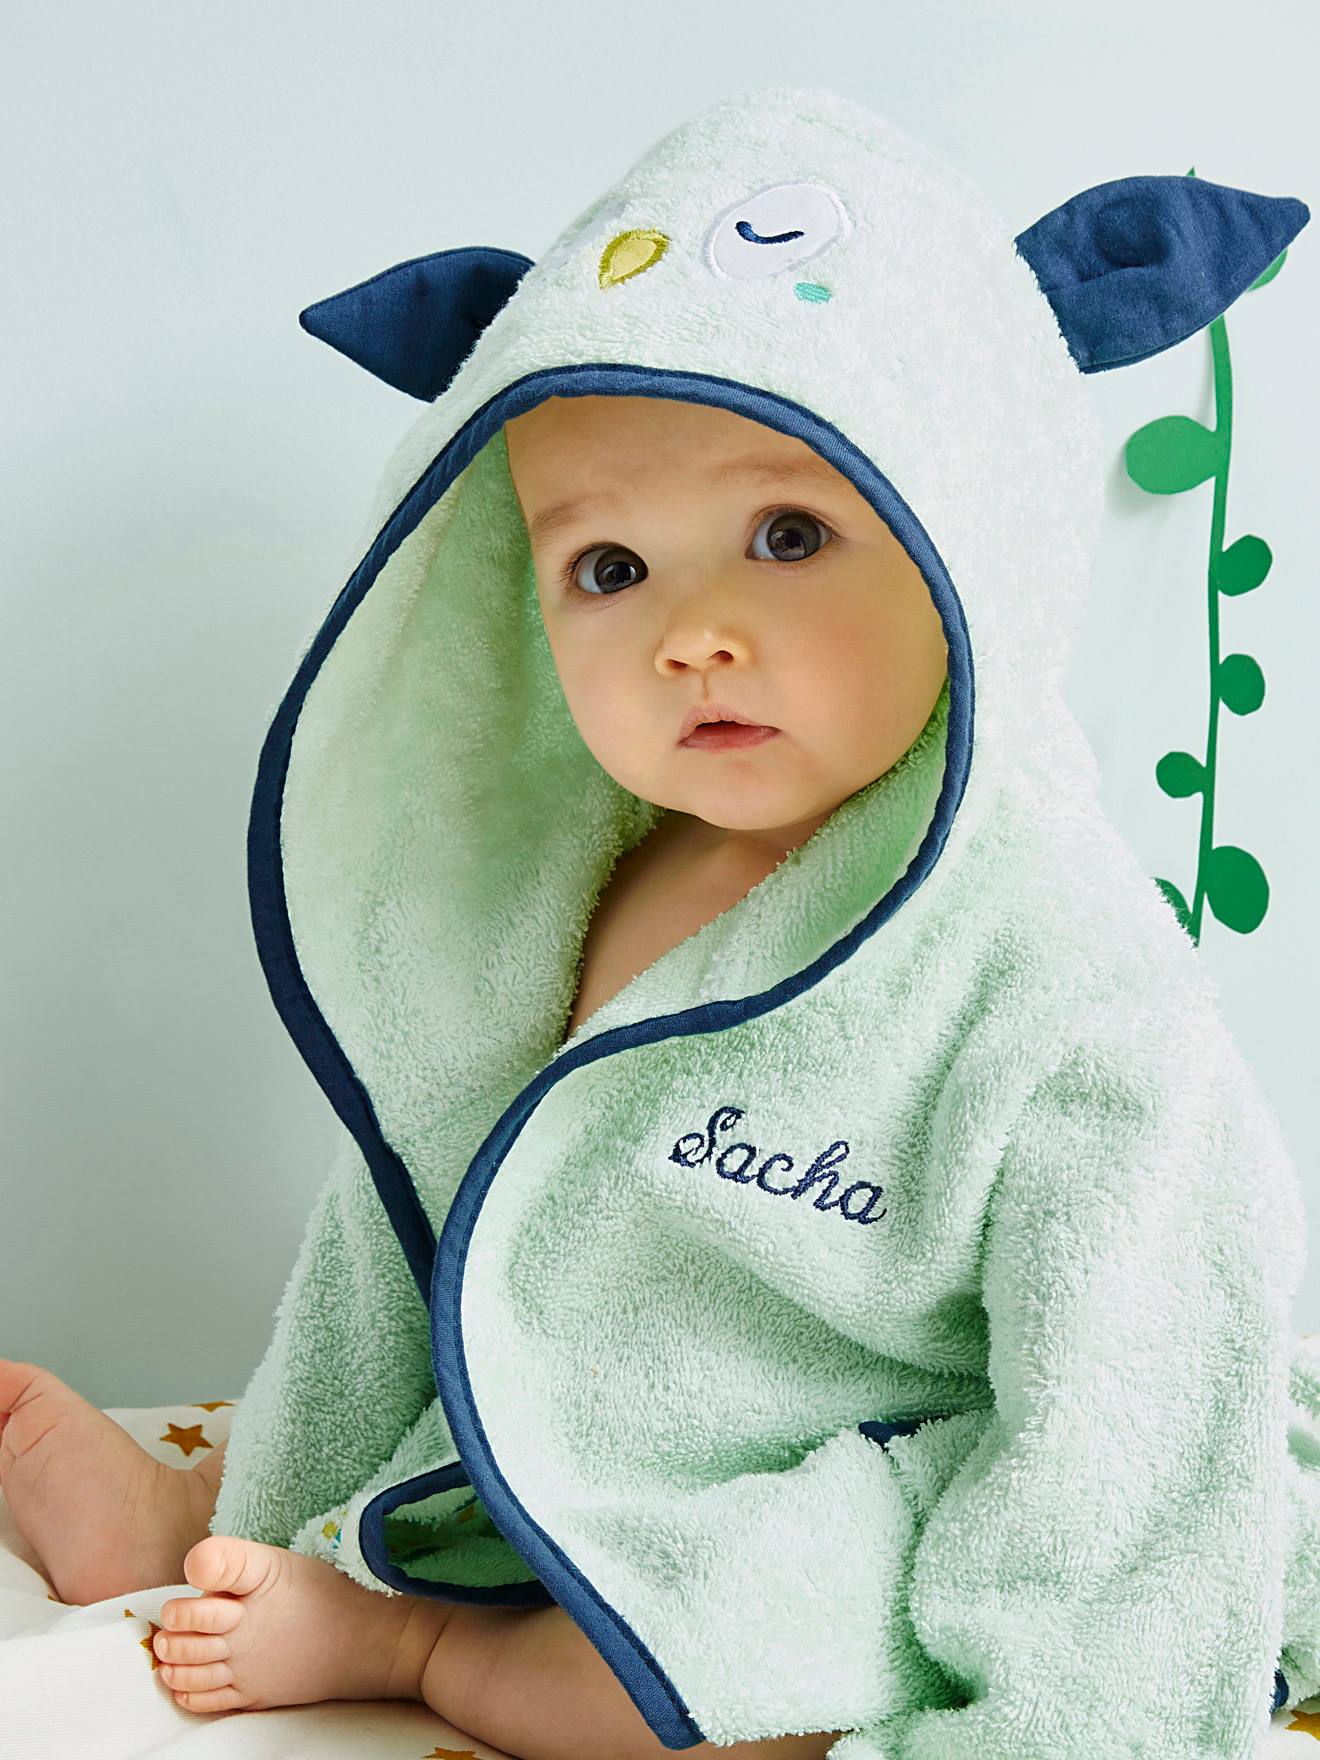 Baby mit Kapuze Bademantel Bestickt Einem Star Wars Design Und Persönliches Name 